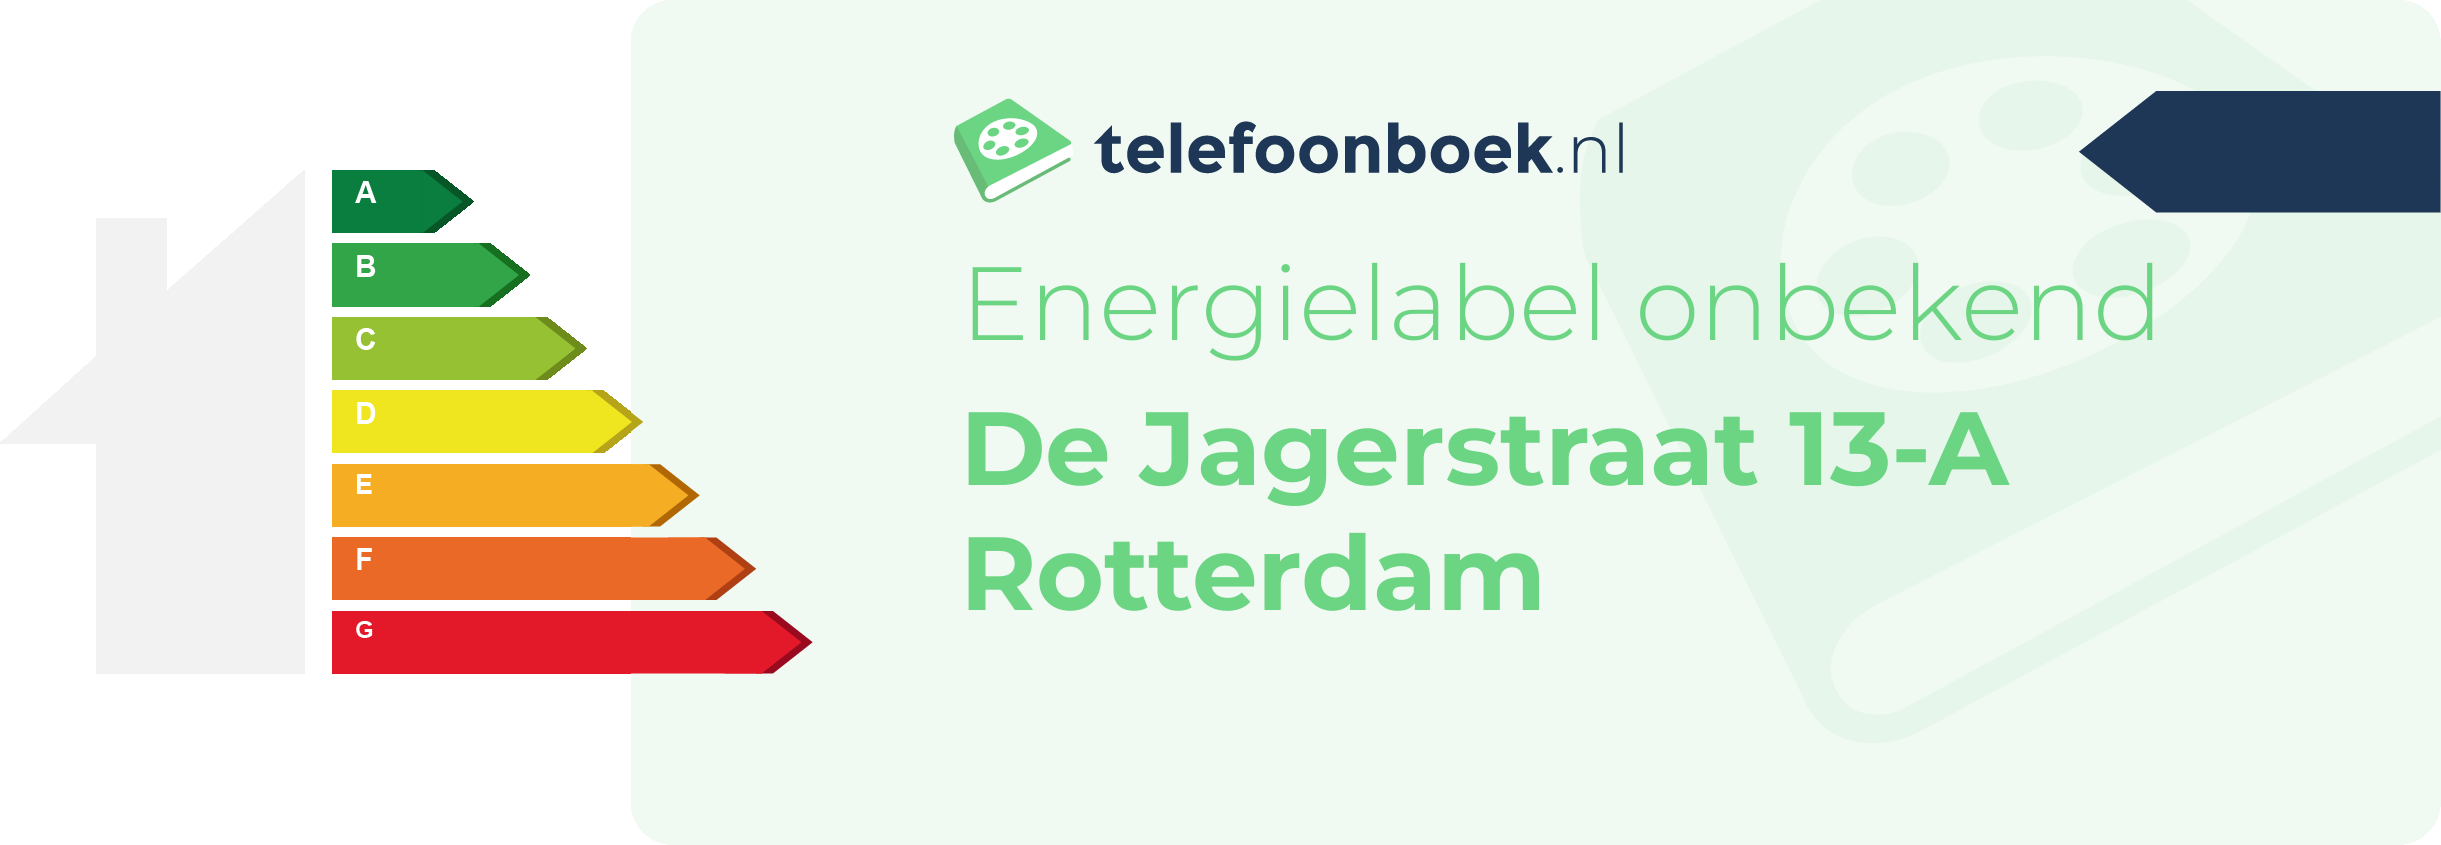 Energielabel De Jagerstraat 13-A Rotterdam